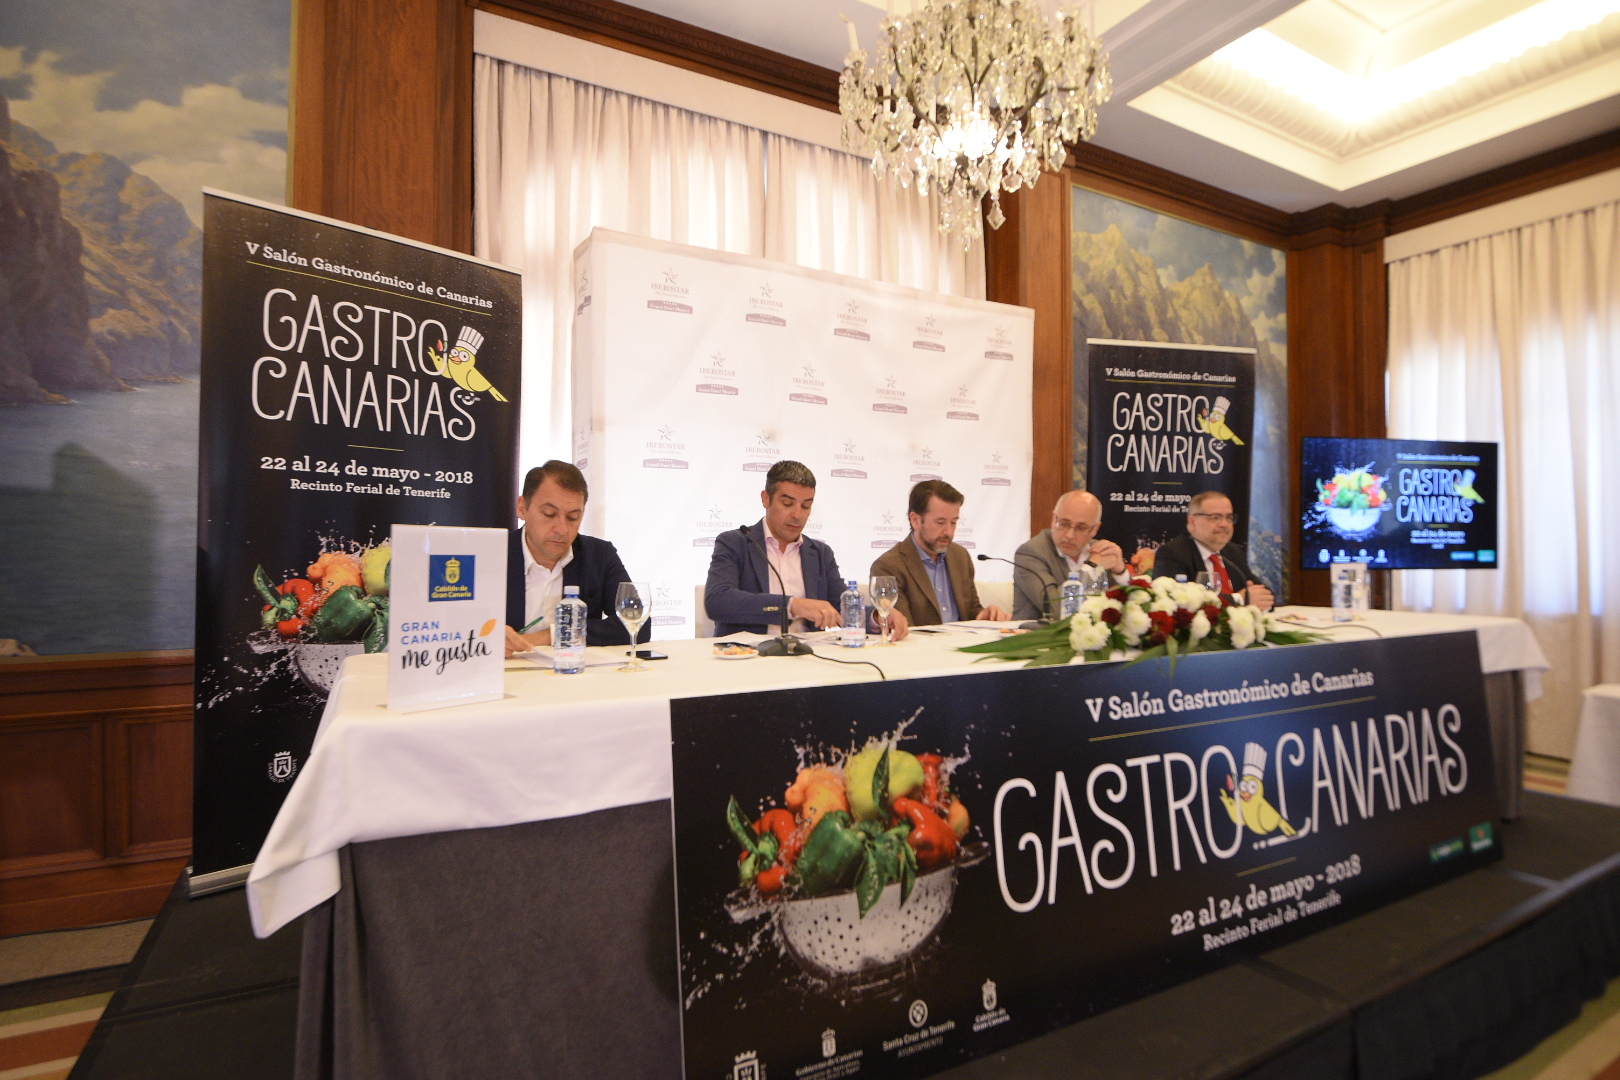 El 5º Salón Gastronómico de Canarias, GastroCanarias 2018, bate récords